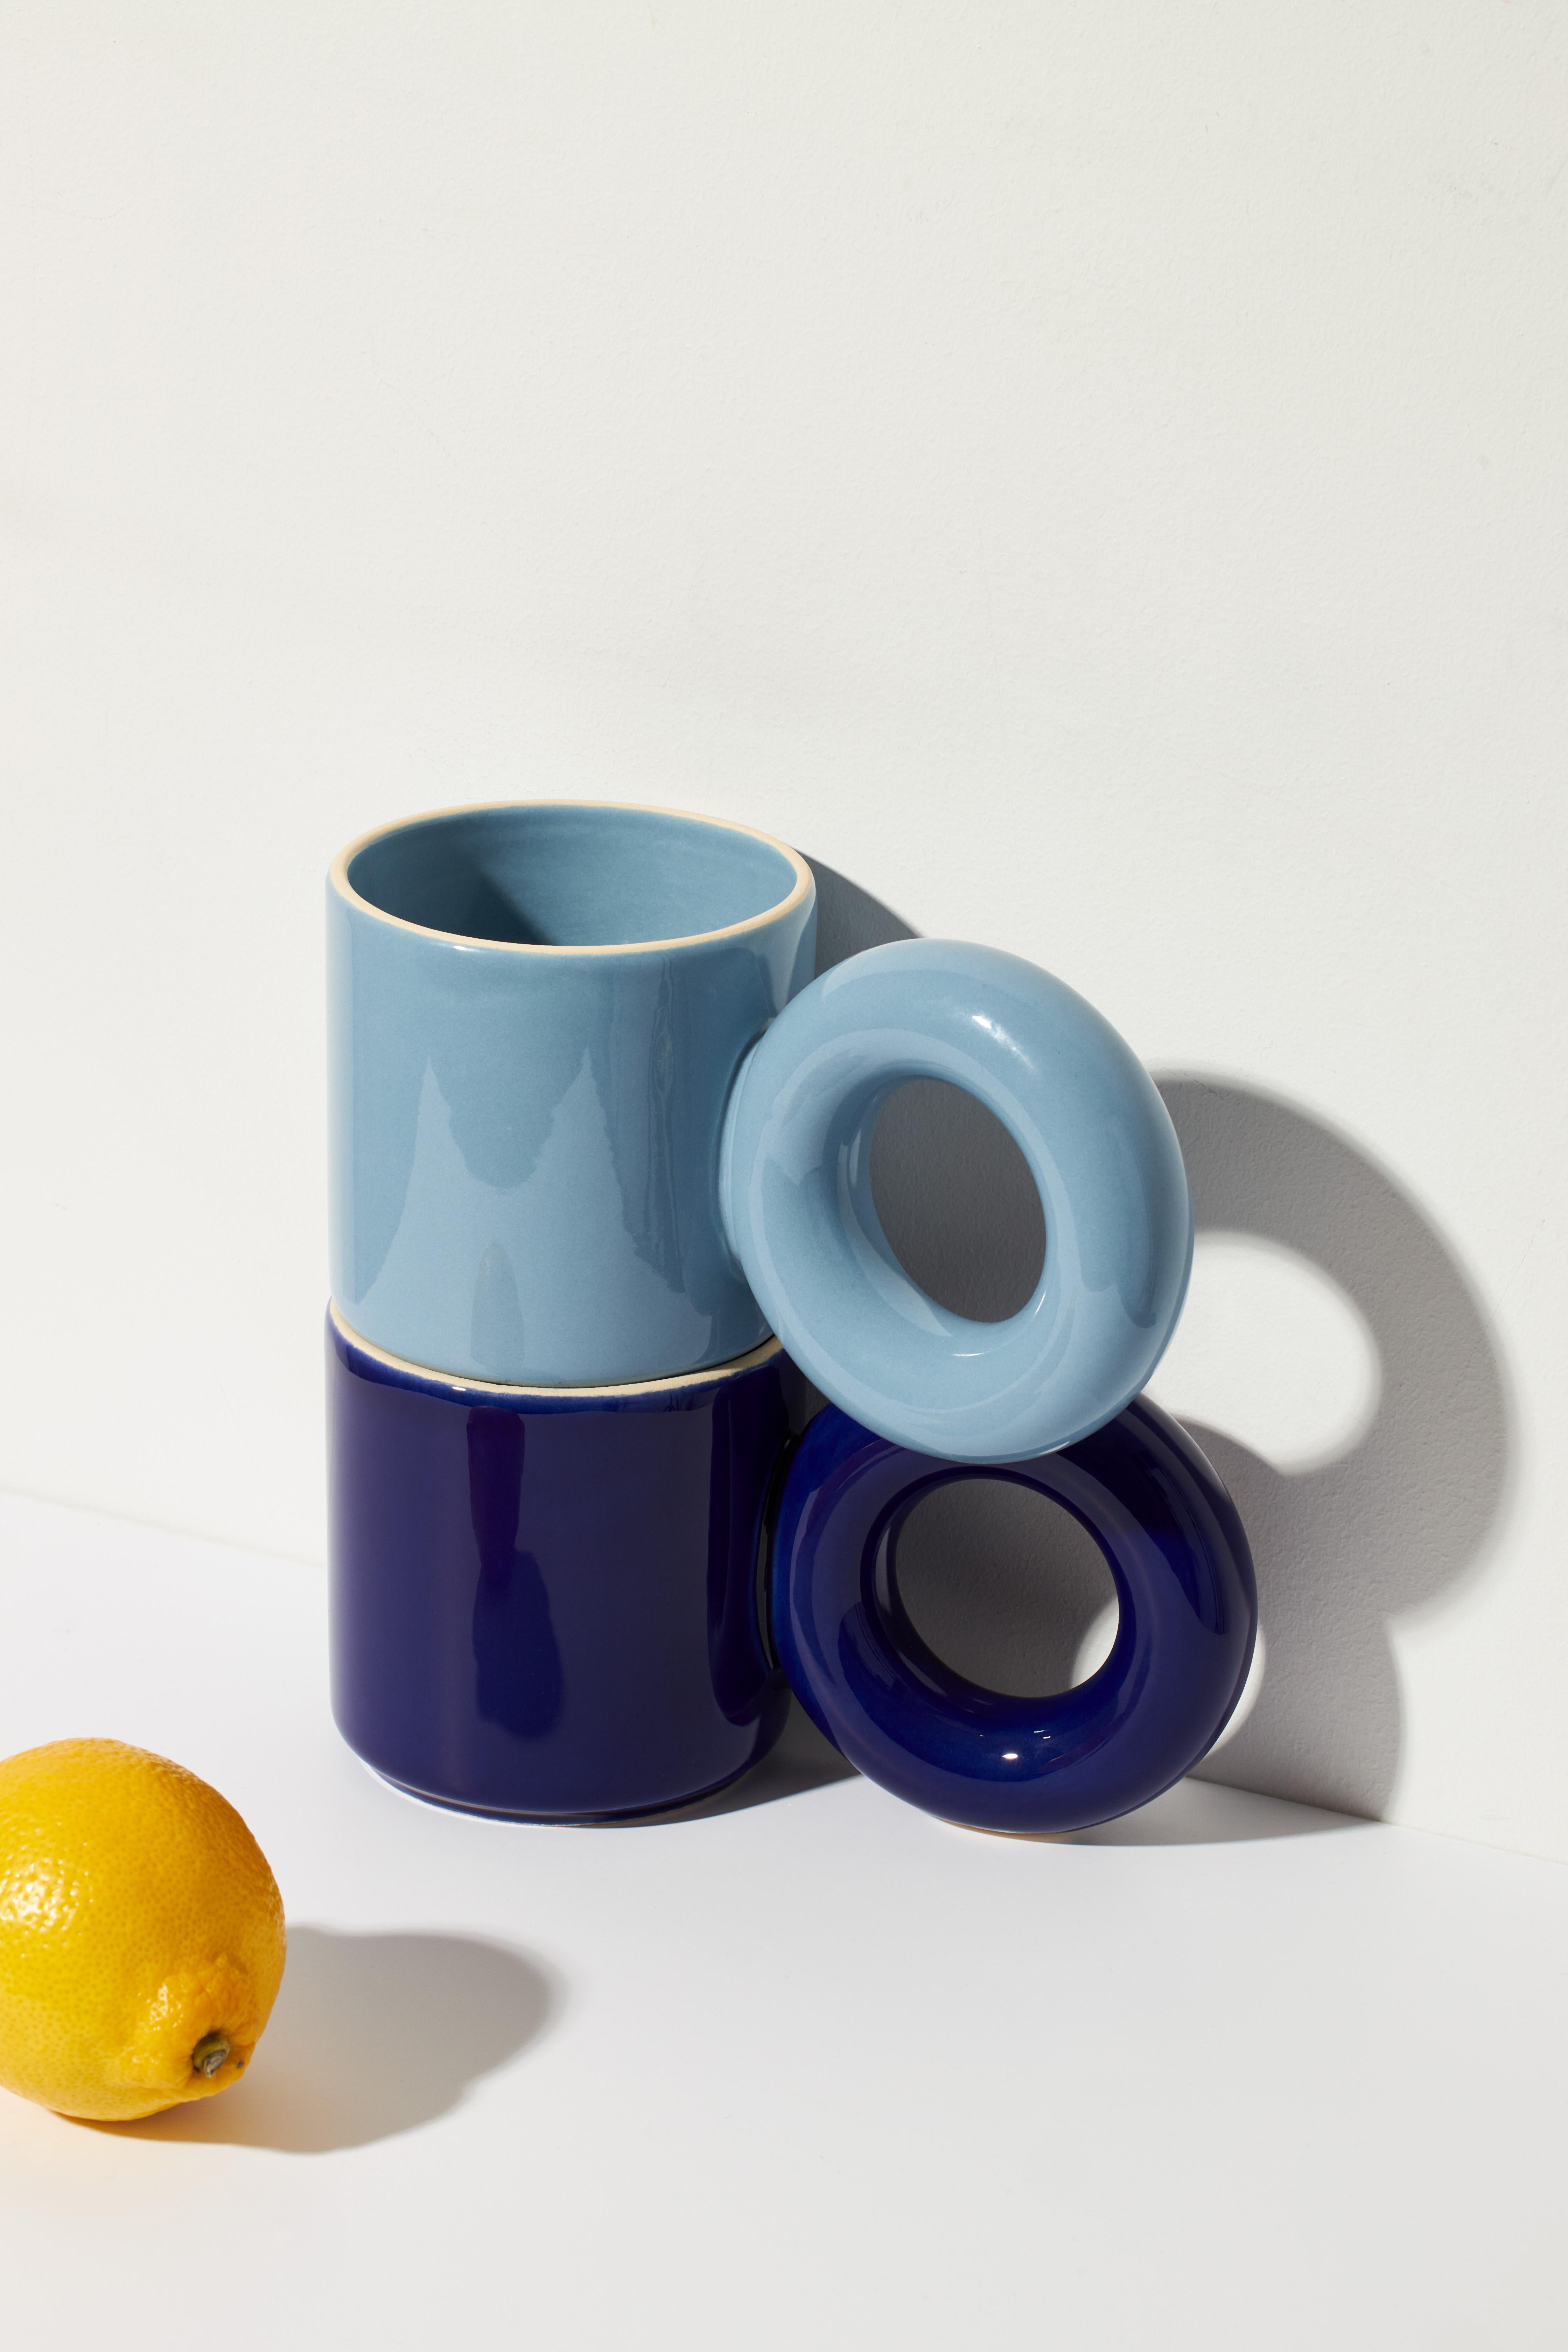 Drôle, spacieux et pratique - voilà ce qu'est UCHO, le premier mug de la famille OKO qui ouvre un nouveau chapitre dans l'histoire de la marque. Le mug est doté d'une poignée solide en forme de bretzel bien connu, qui tient parfaitement dans la main